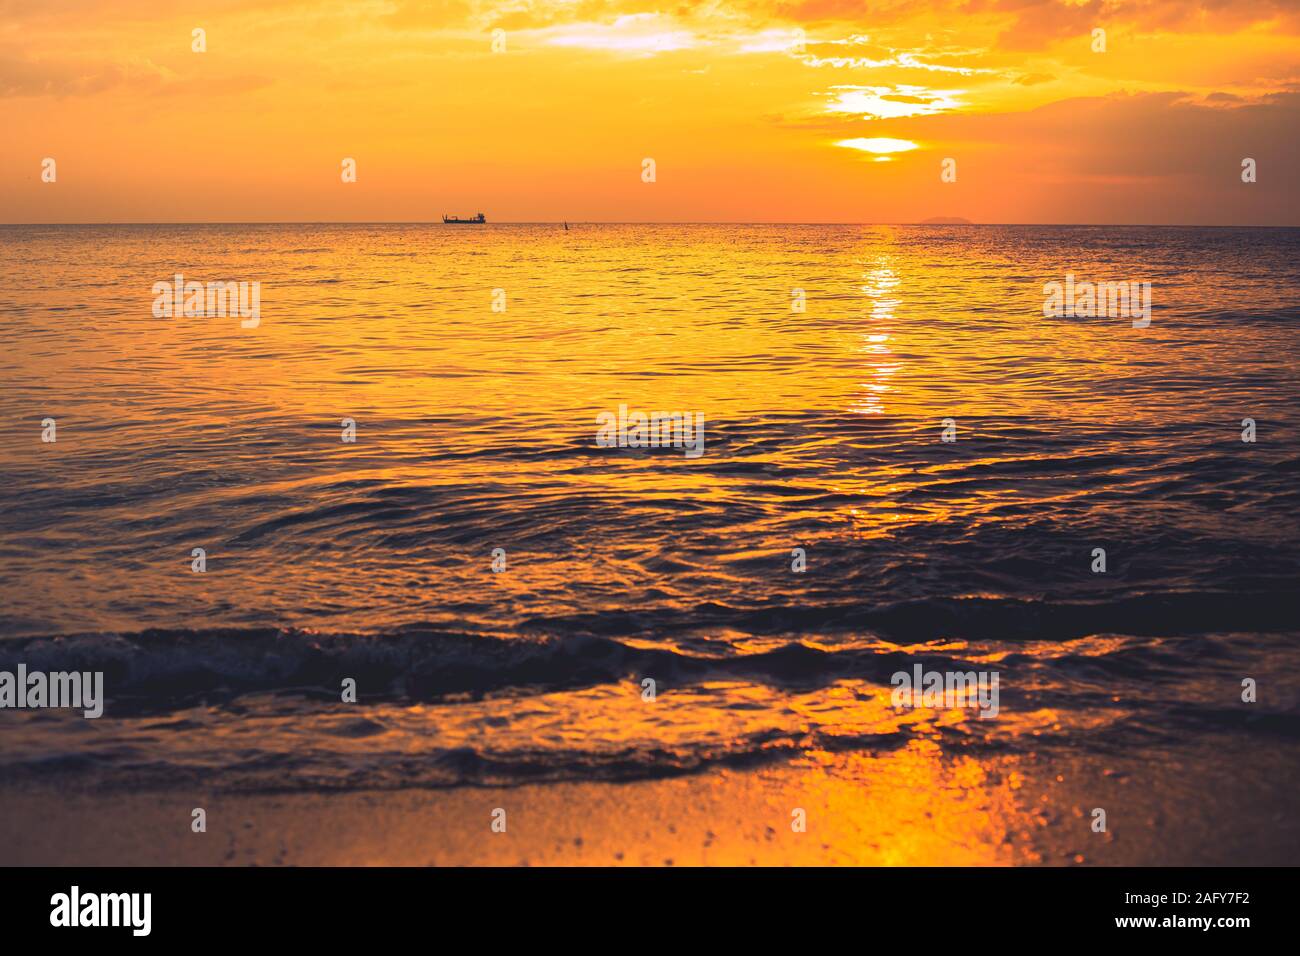 sunset sea beach dusk orange sky in summer season. Stock Photo